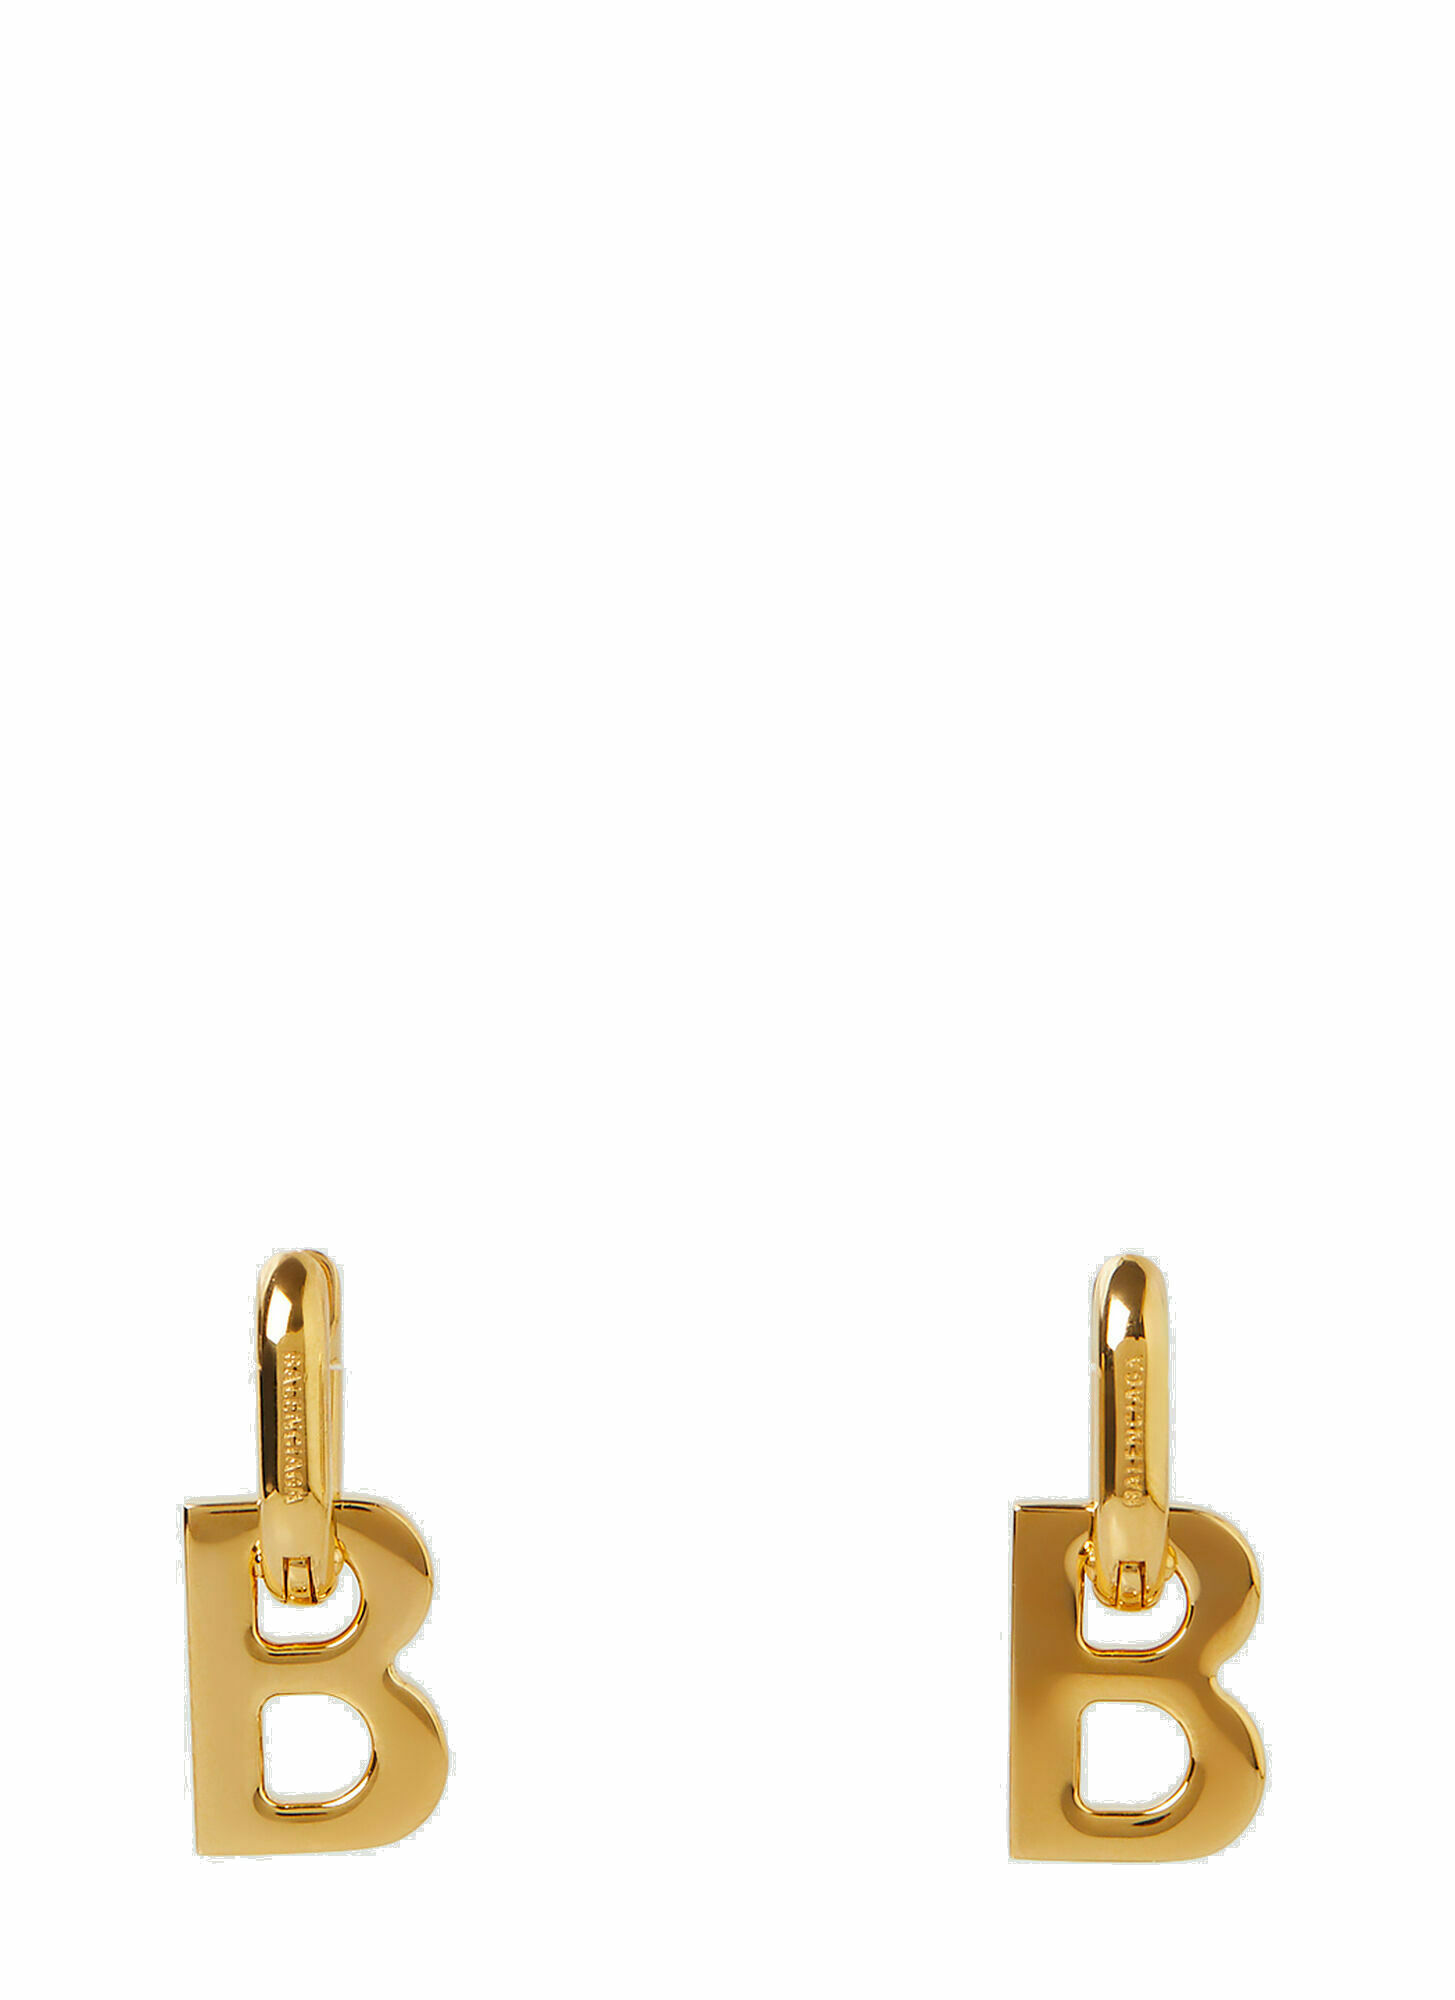 Photo: B Earrings in Gold